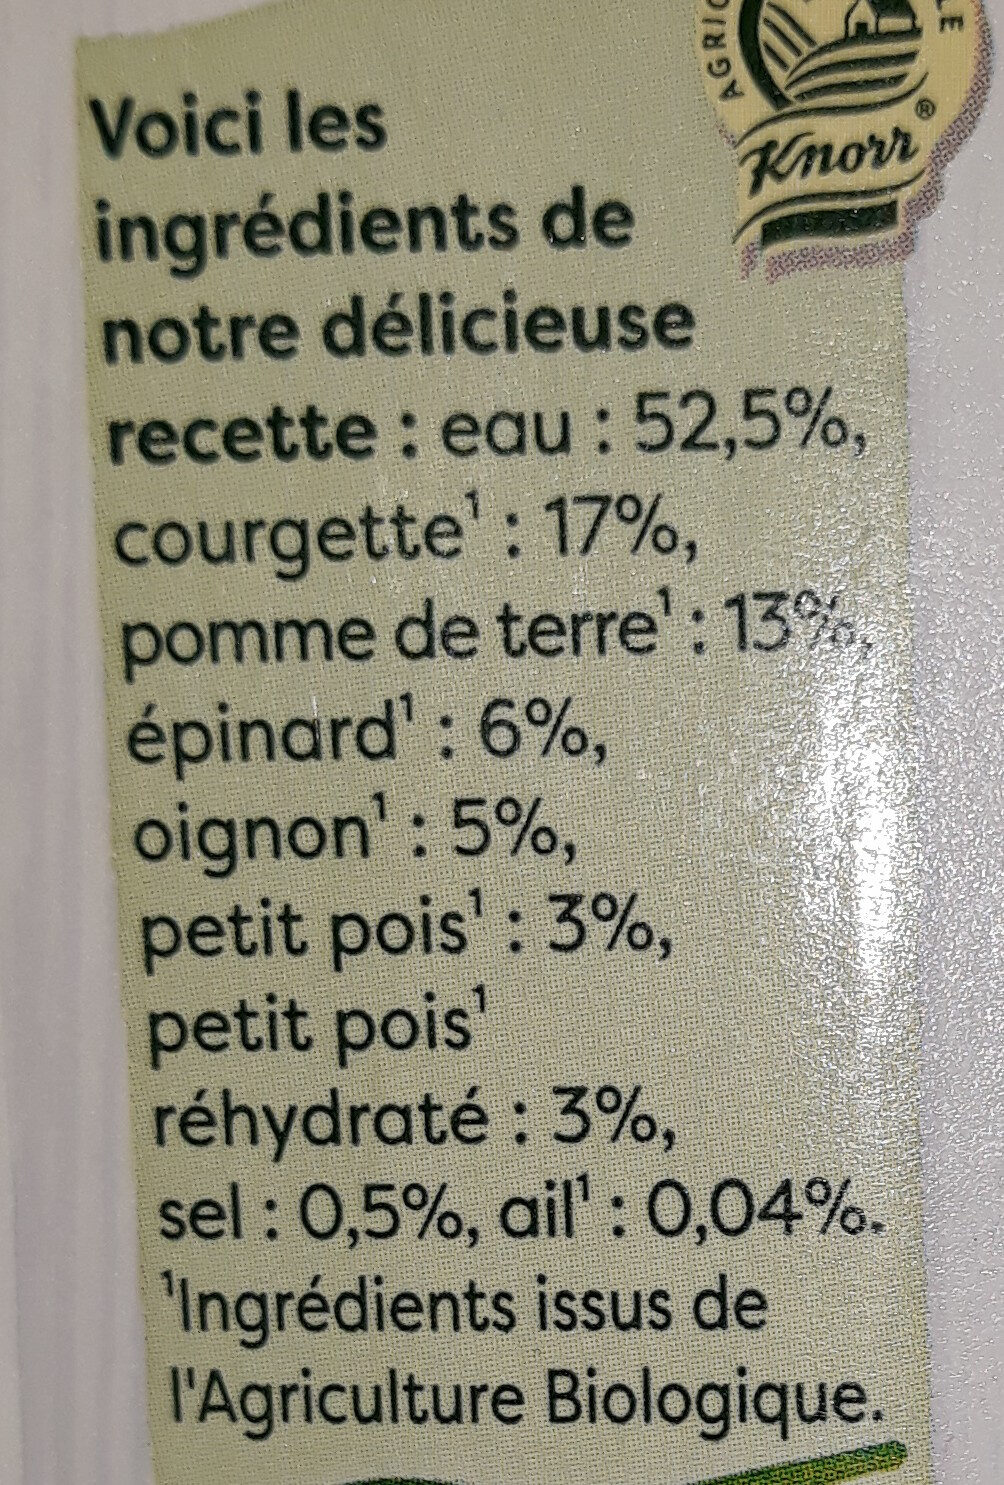 Knorr Et c'est tout Soupe Bio Liquide Velouté Courgettes Epinards Bouteille de 750ml - Ingrédients